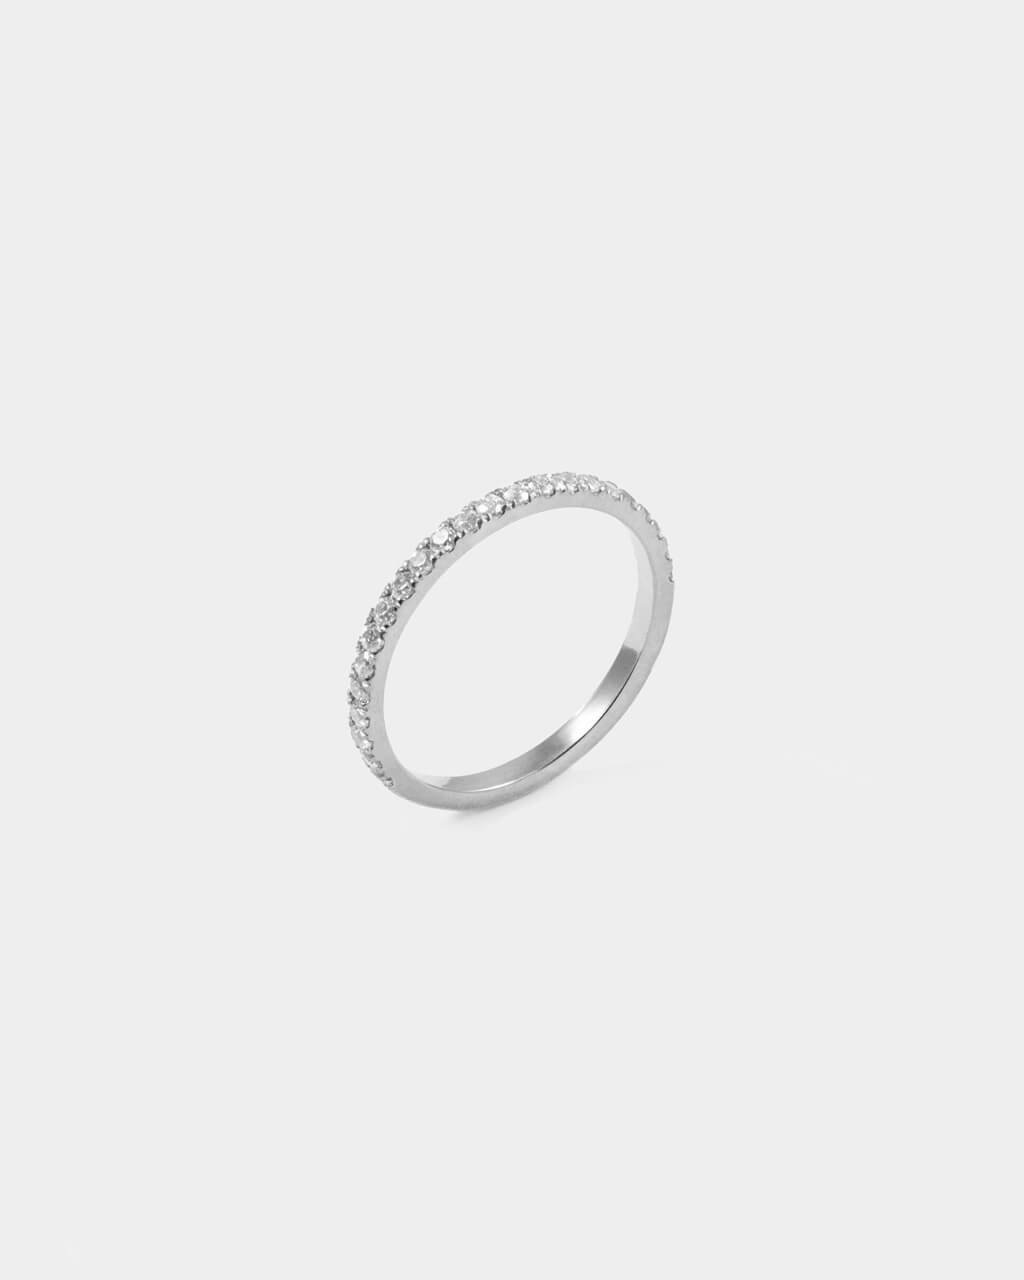 Half Eternity Ring aus Weißgold mit Diamanten besetzt. 